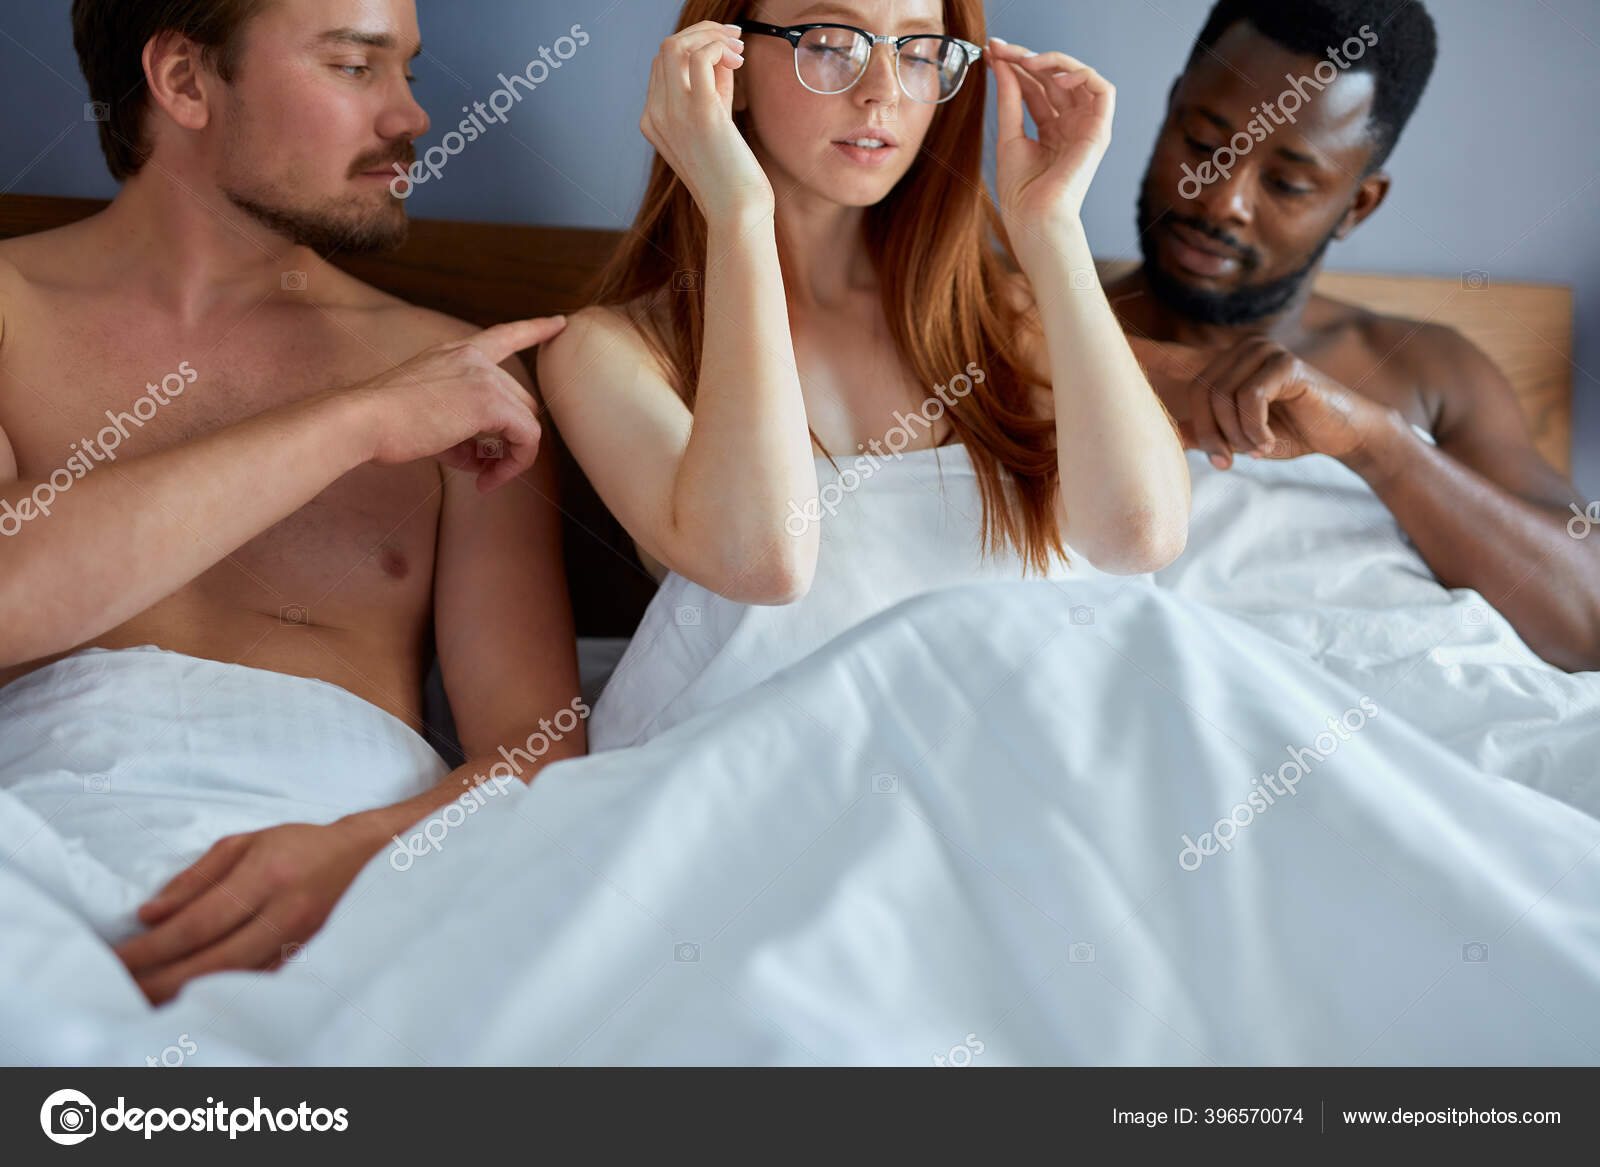 Threesome concept picture